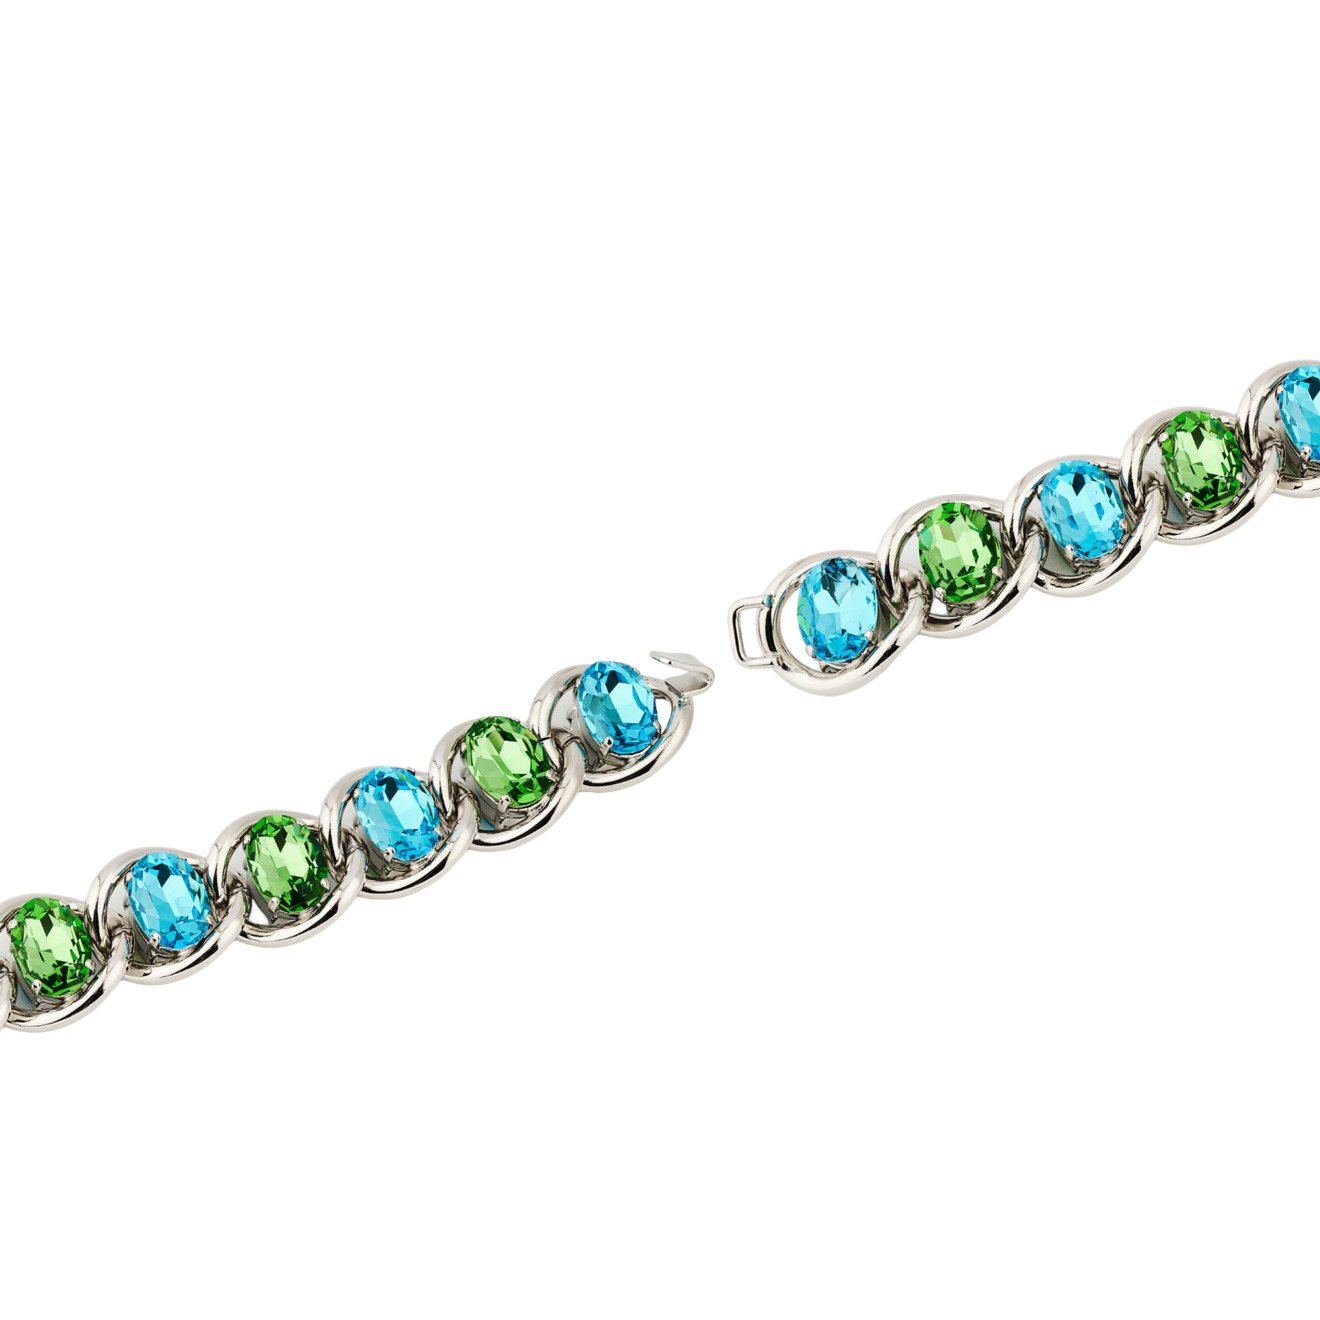 Marni Браслет-цепь с зелено-голубыми кристаллами lisa smith серебристый браслет цепь с кристаллами